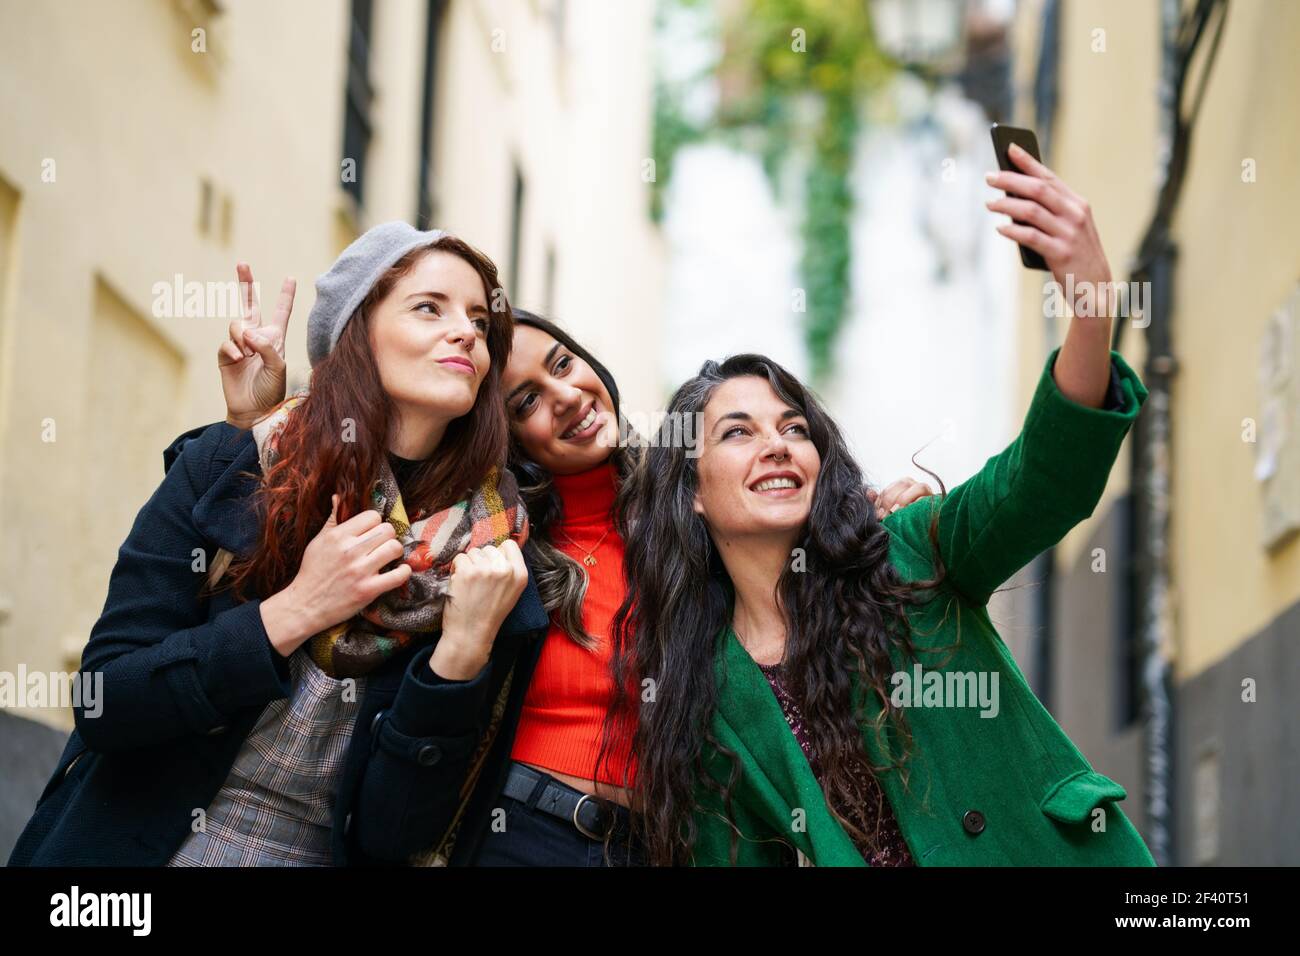 Groupe multiethnique de trois femmes heureuses prenant une photo de selfie avec un smartphone en milieu urbain. Groupe de trois femmes heureuses marchant ensemble à l'extérieur Banque D'Images